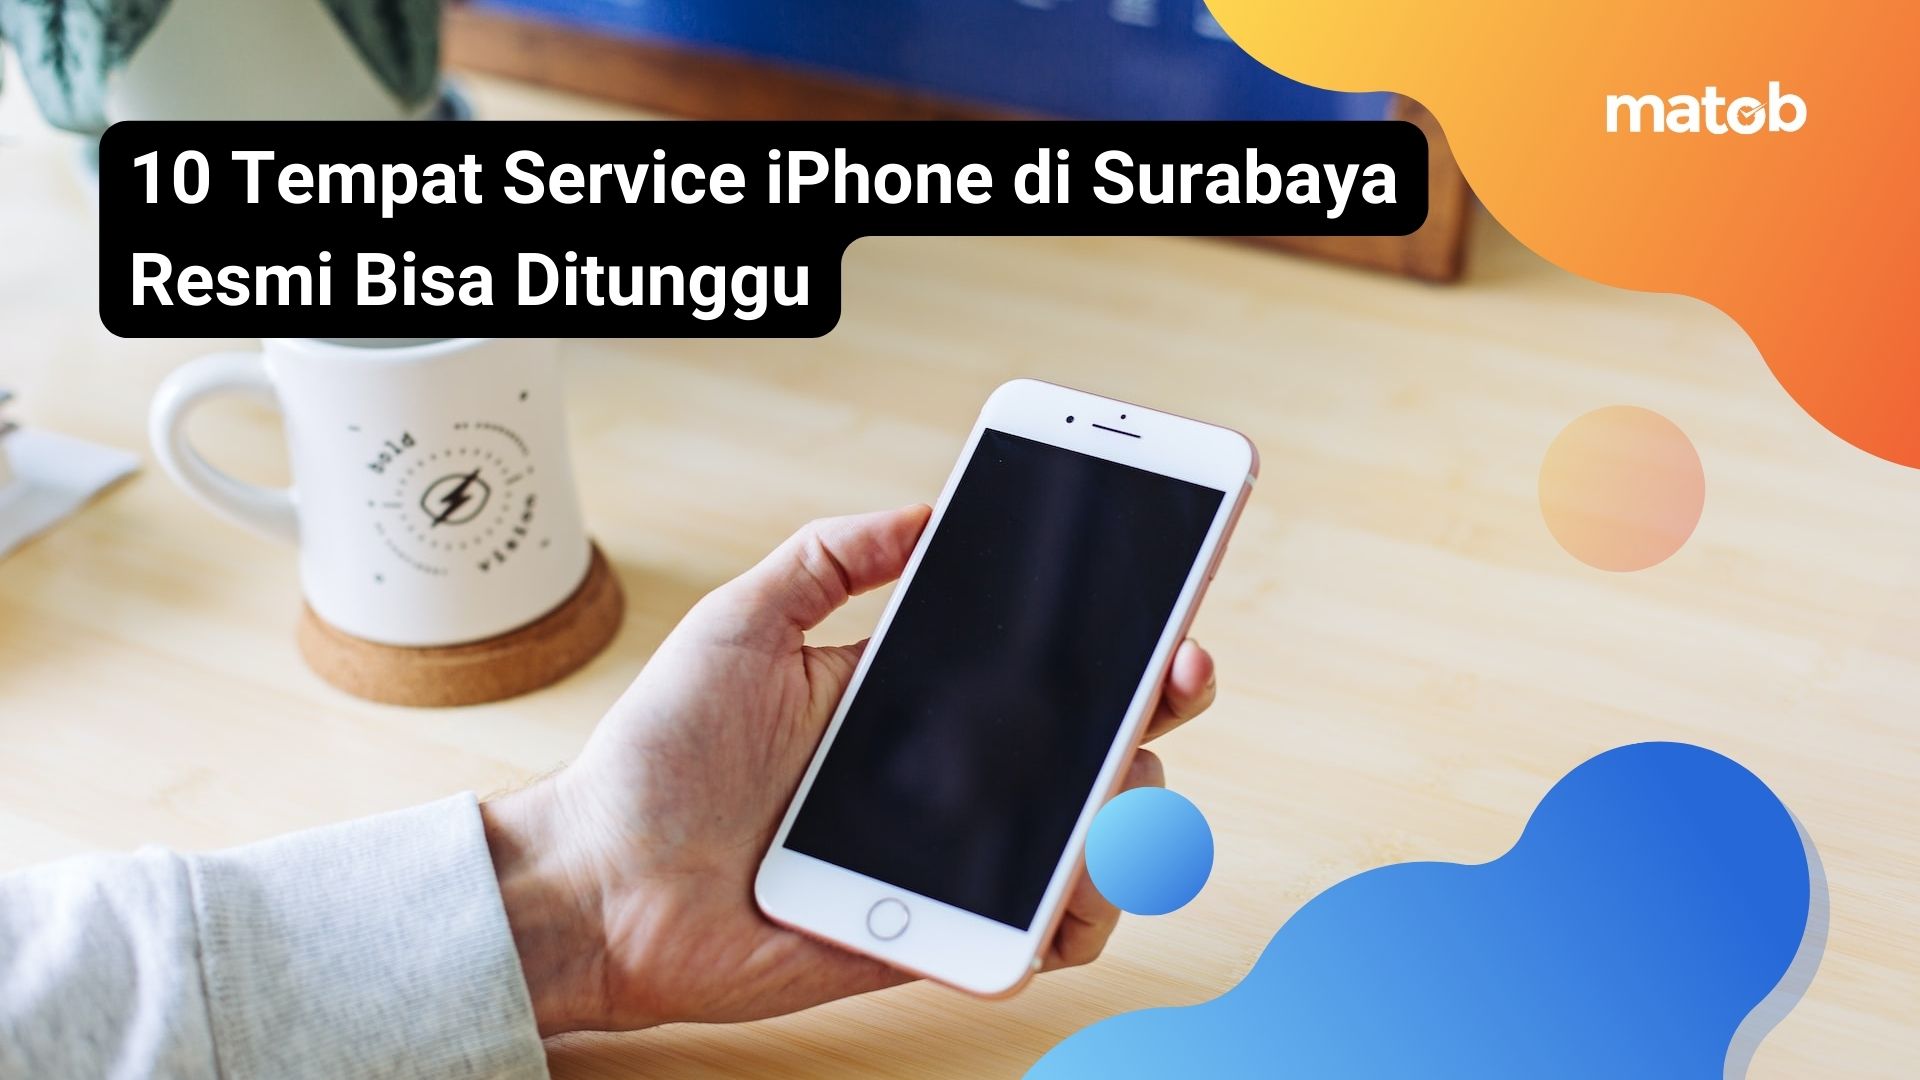 10 Tempat Service iPhone di Surabaya Resmi Bisa Ditunggu